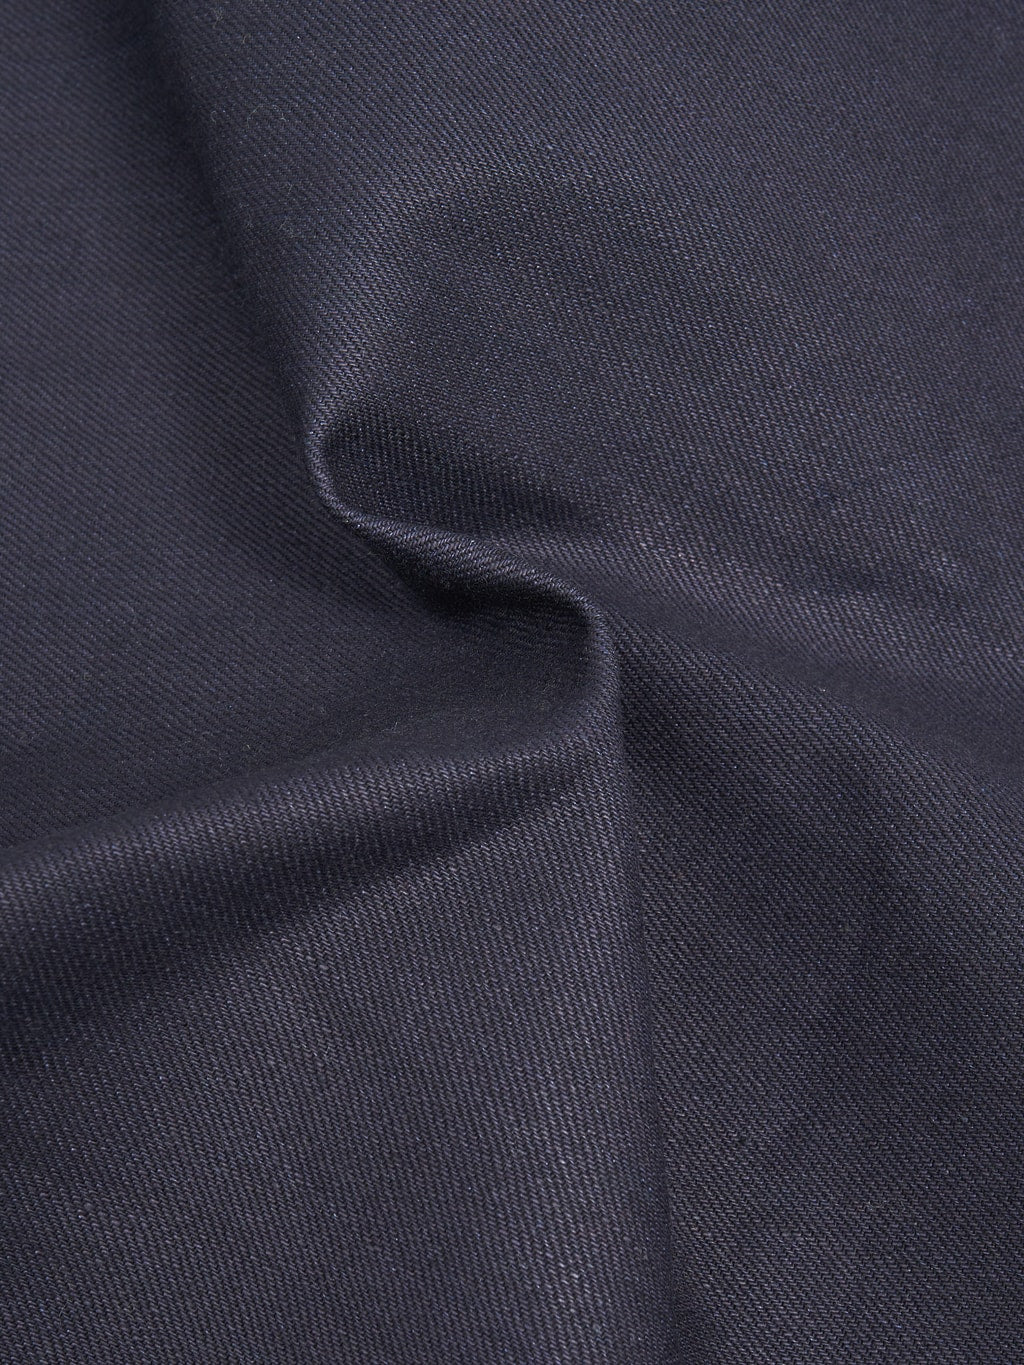 3sixteen type III denim jacket shadow selvedge indigo cotton fabric